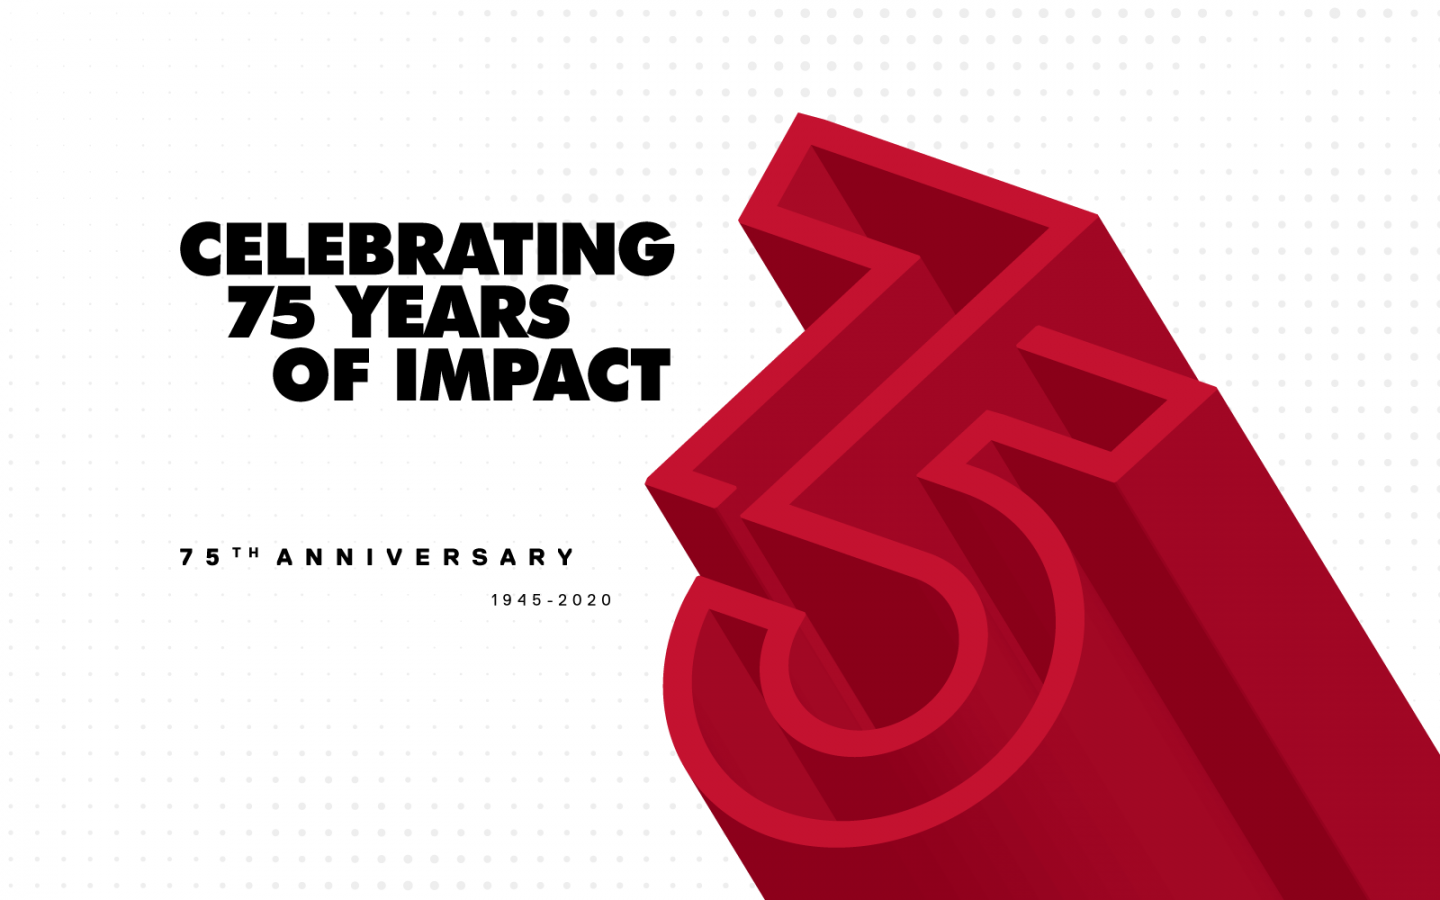 Celebrating 75 Years of Impact